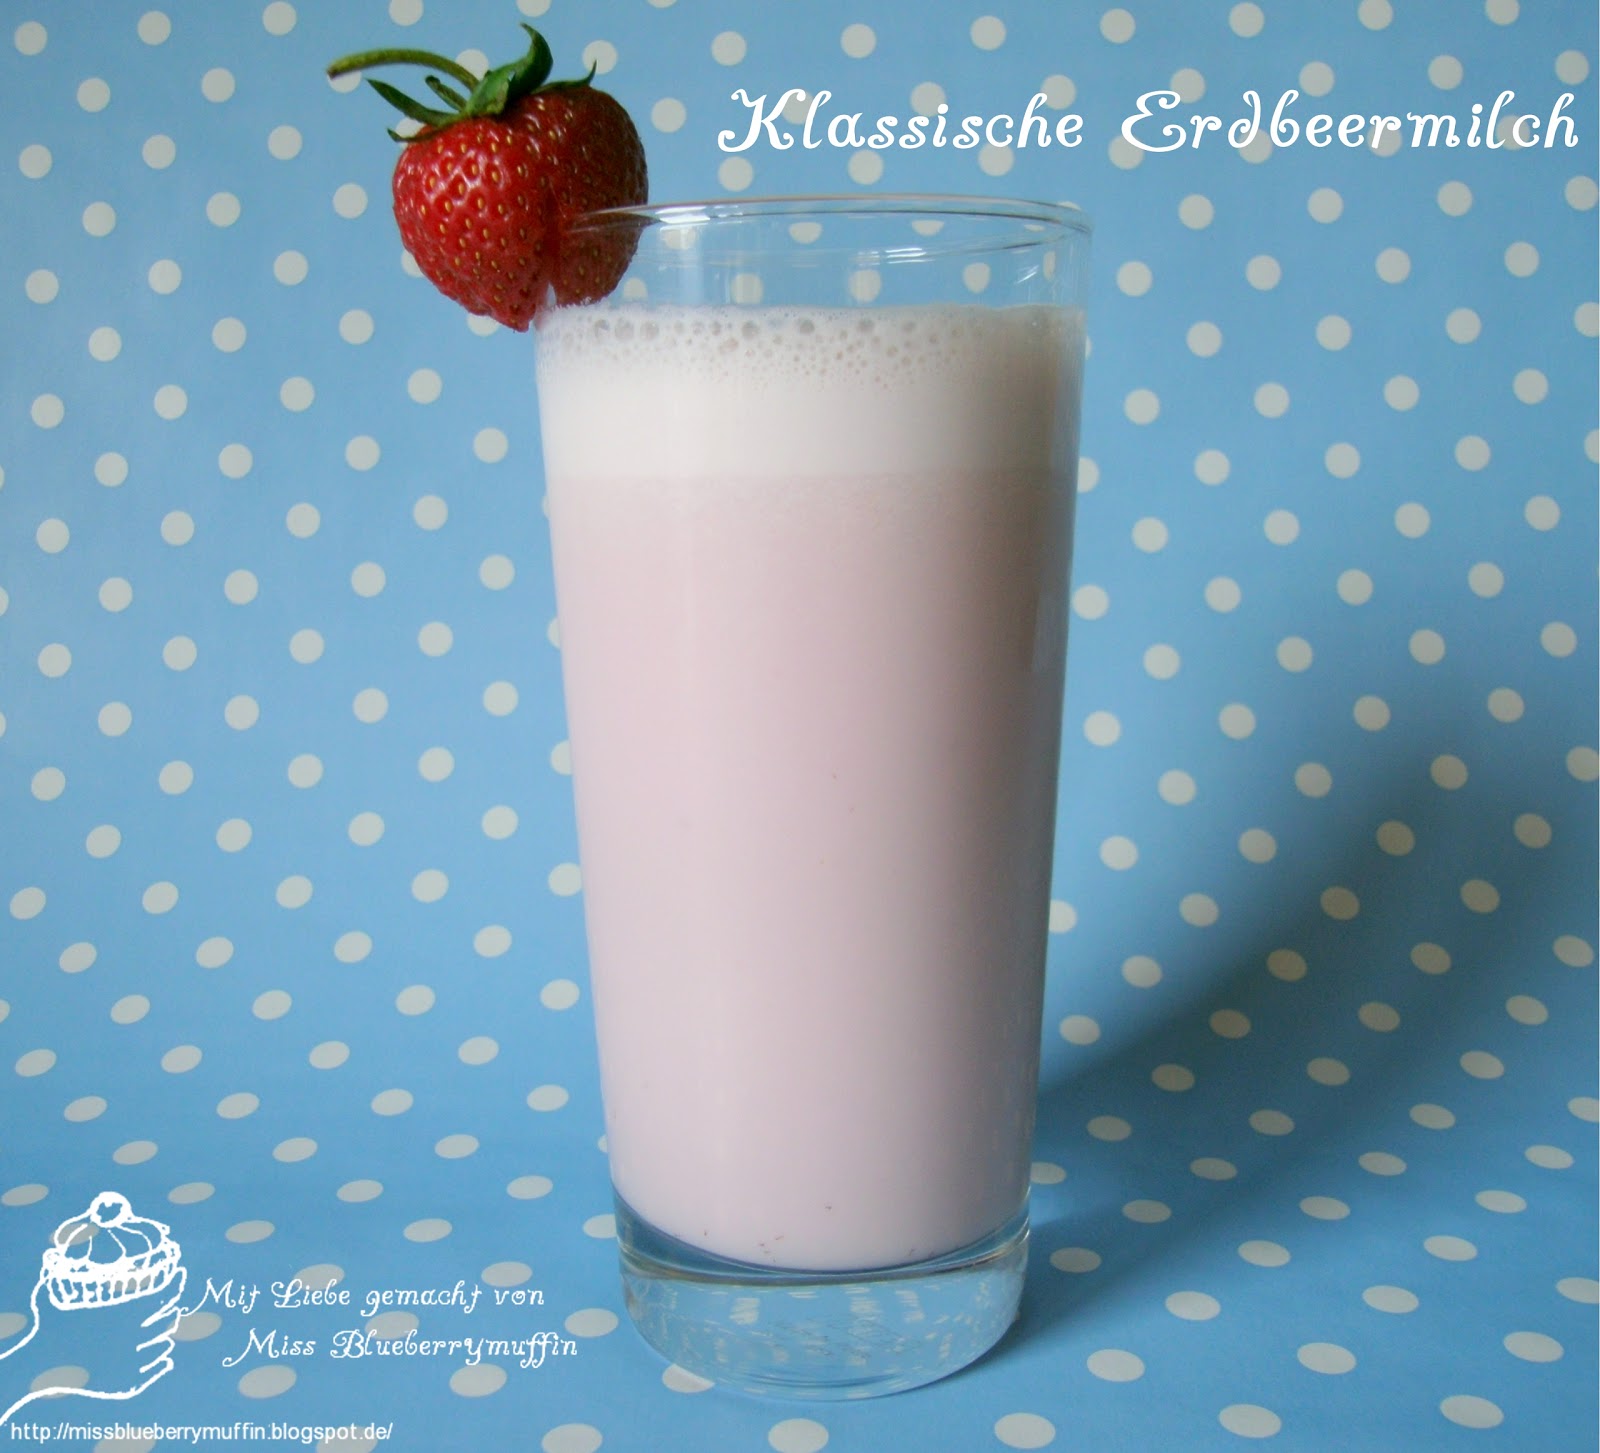 Miss Blueberrymuffin&amp;#39;s kitchen: Klassische Erdbeermilch